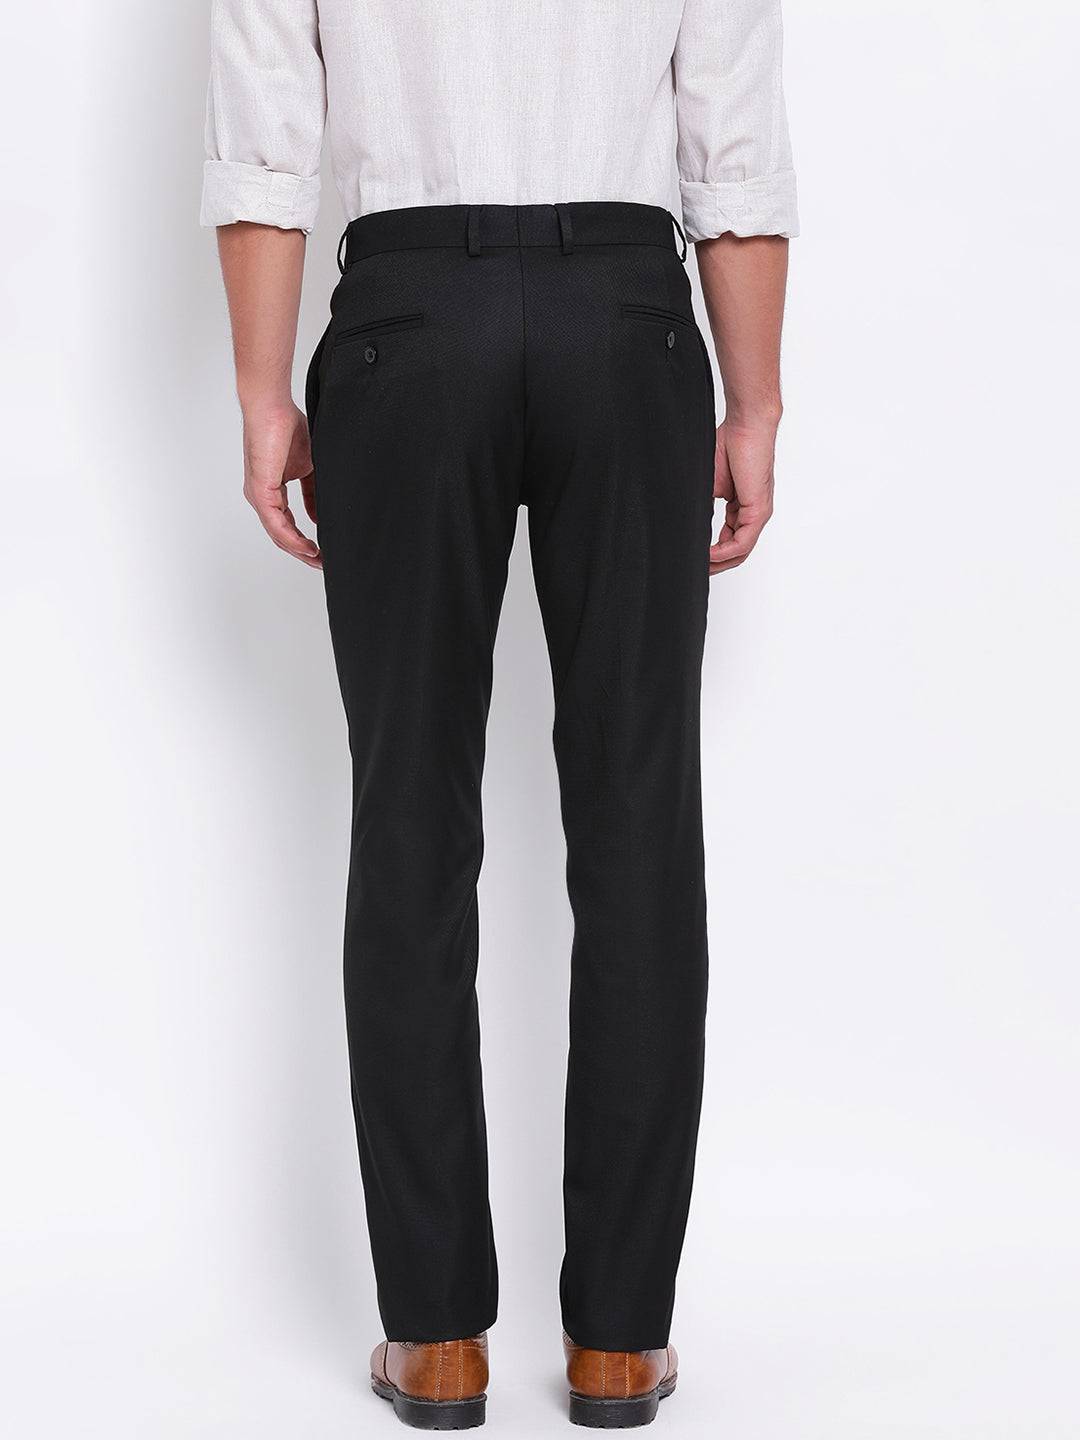 Black Self Design Slim Fit Trouser